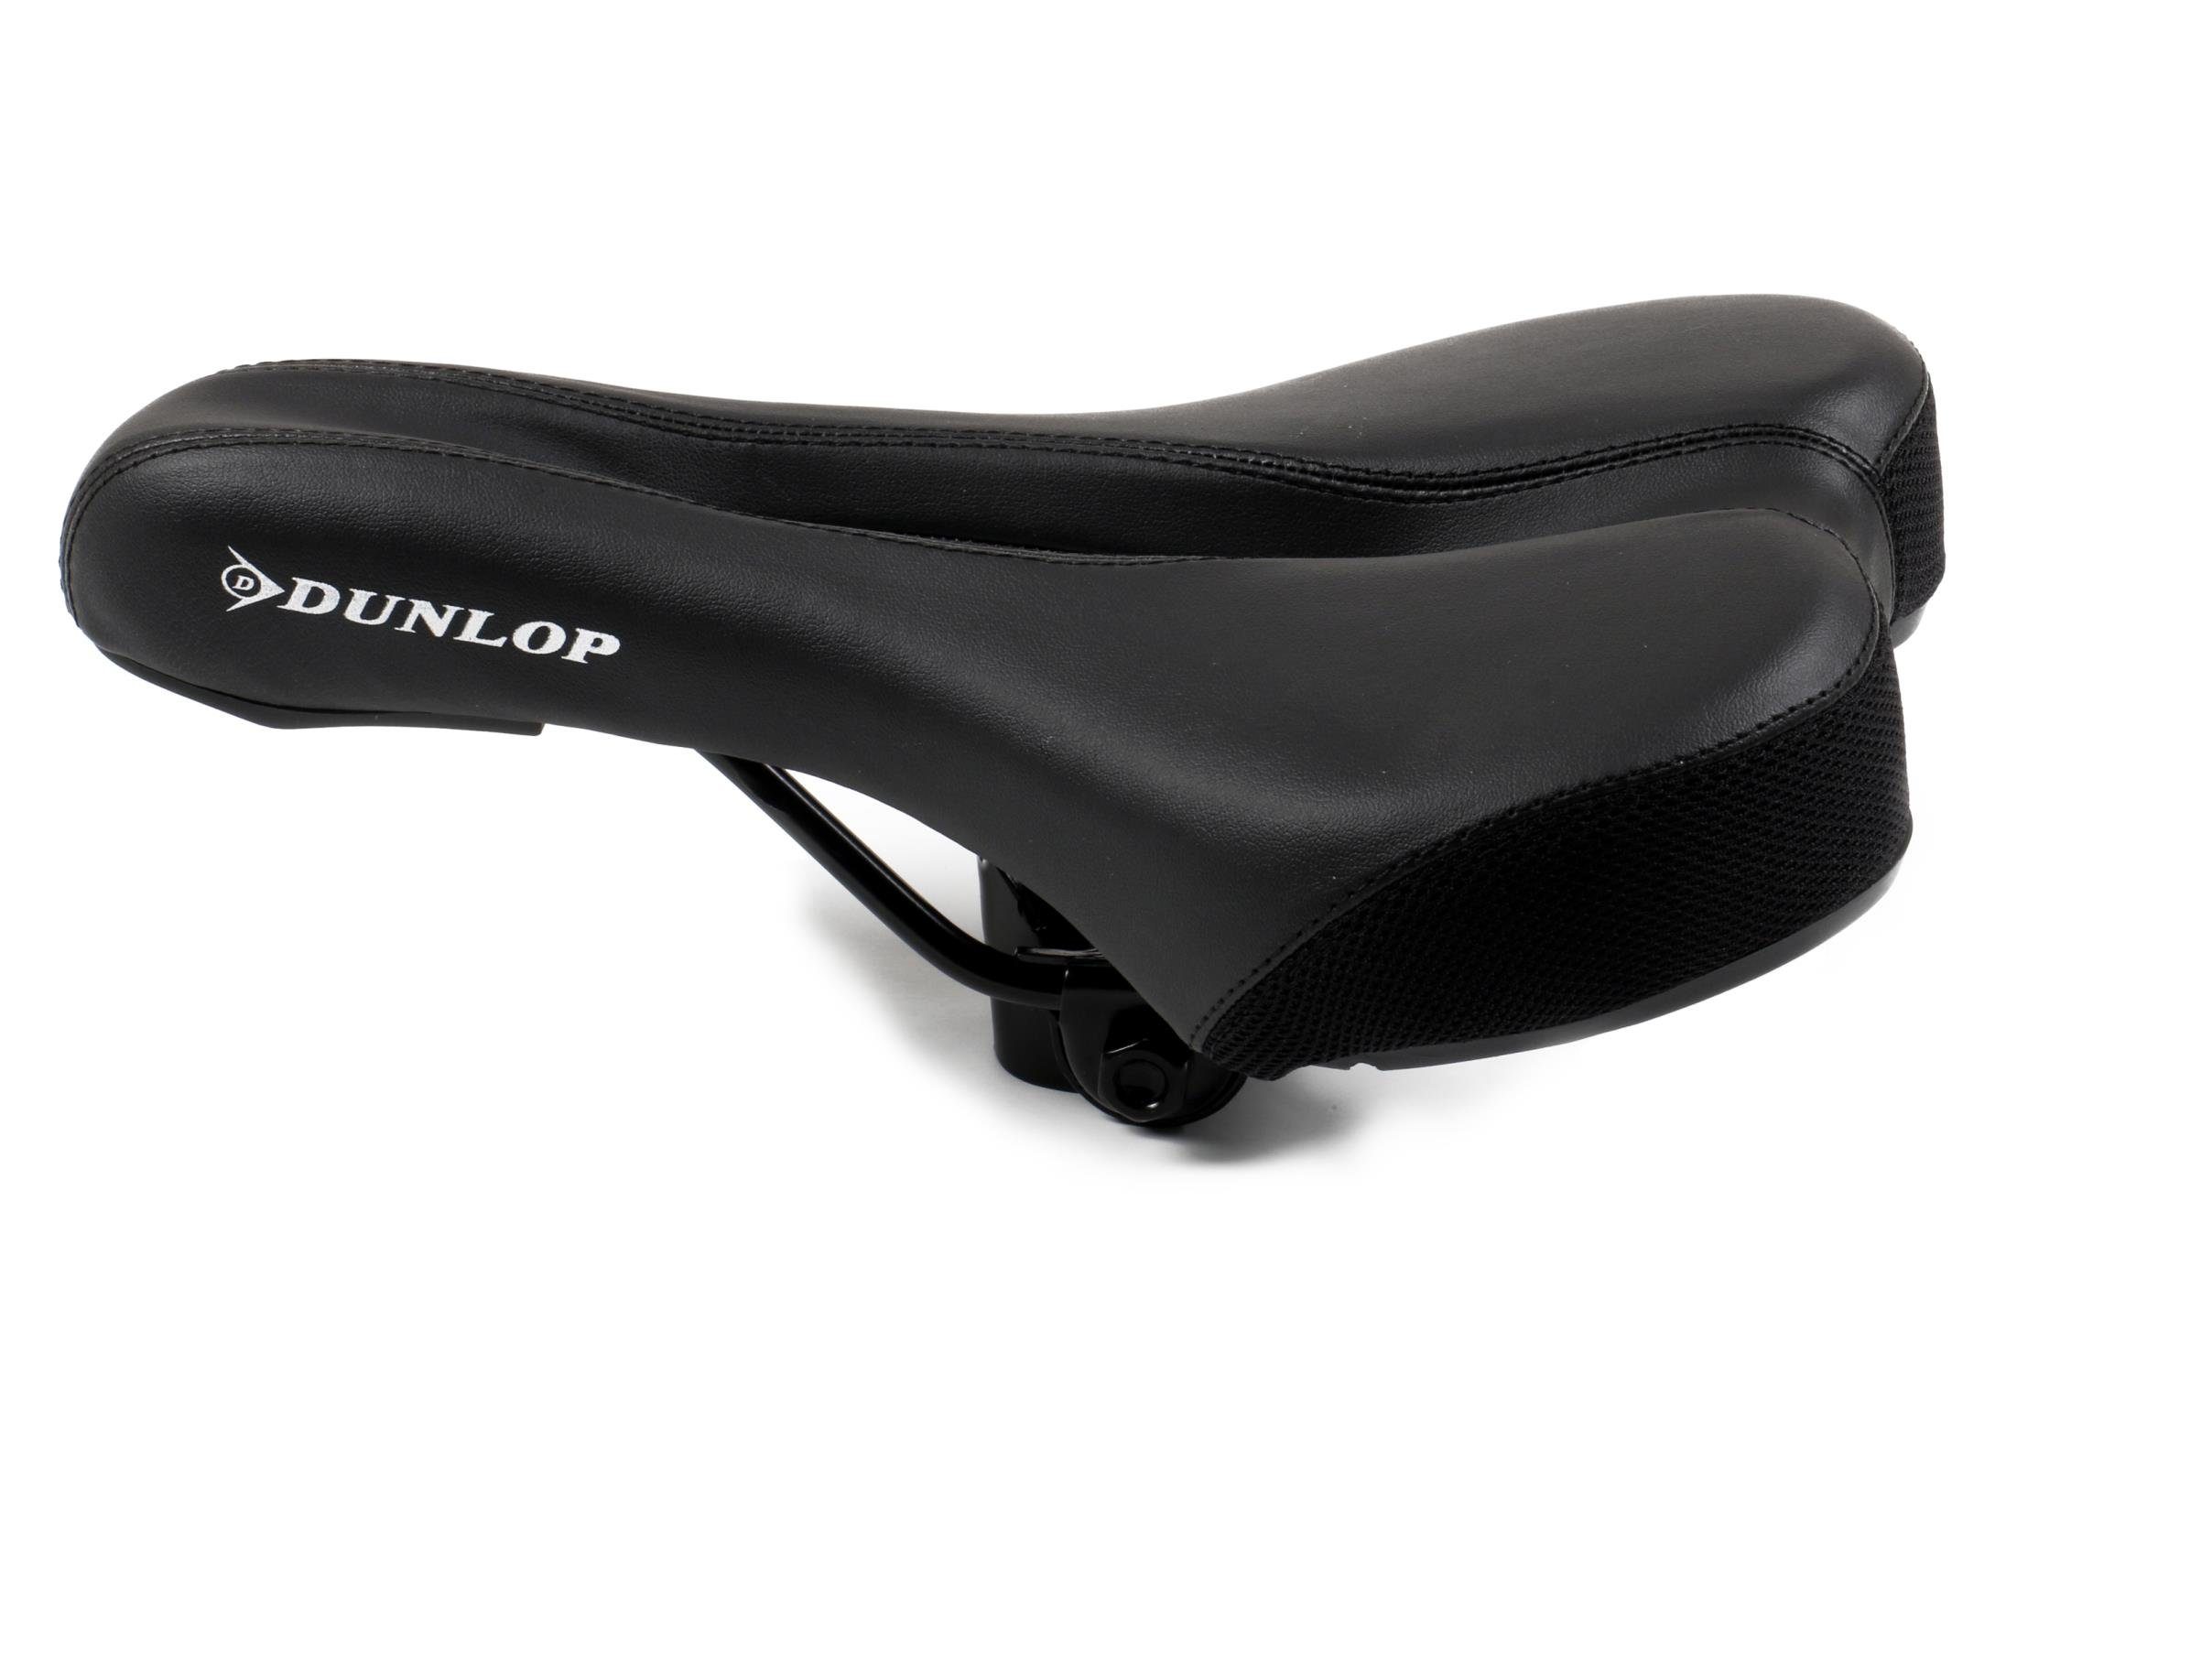 Dunlop Fahrradsattel für MTB, City-, Touren- und Rennenräder (Sattel gefedert), Fahrradsattel mit Komfortzonenausschnitt